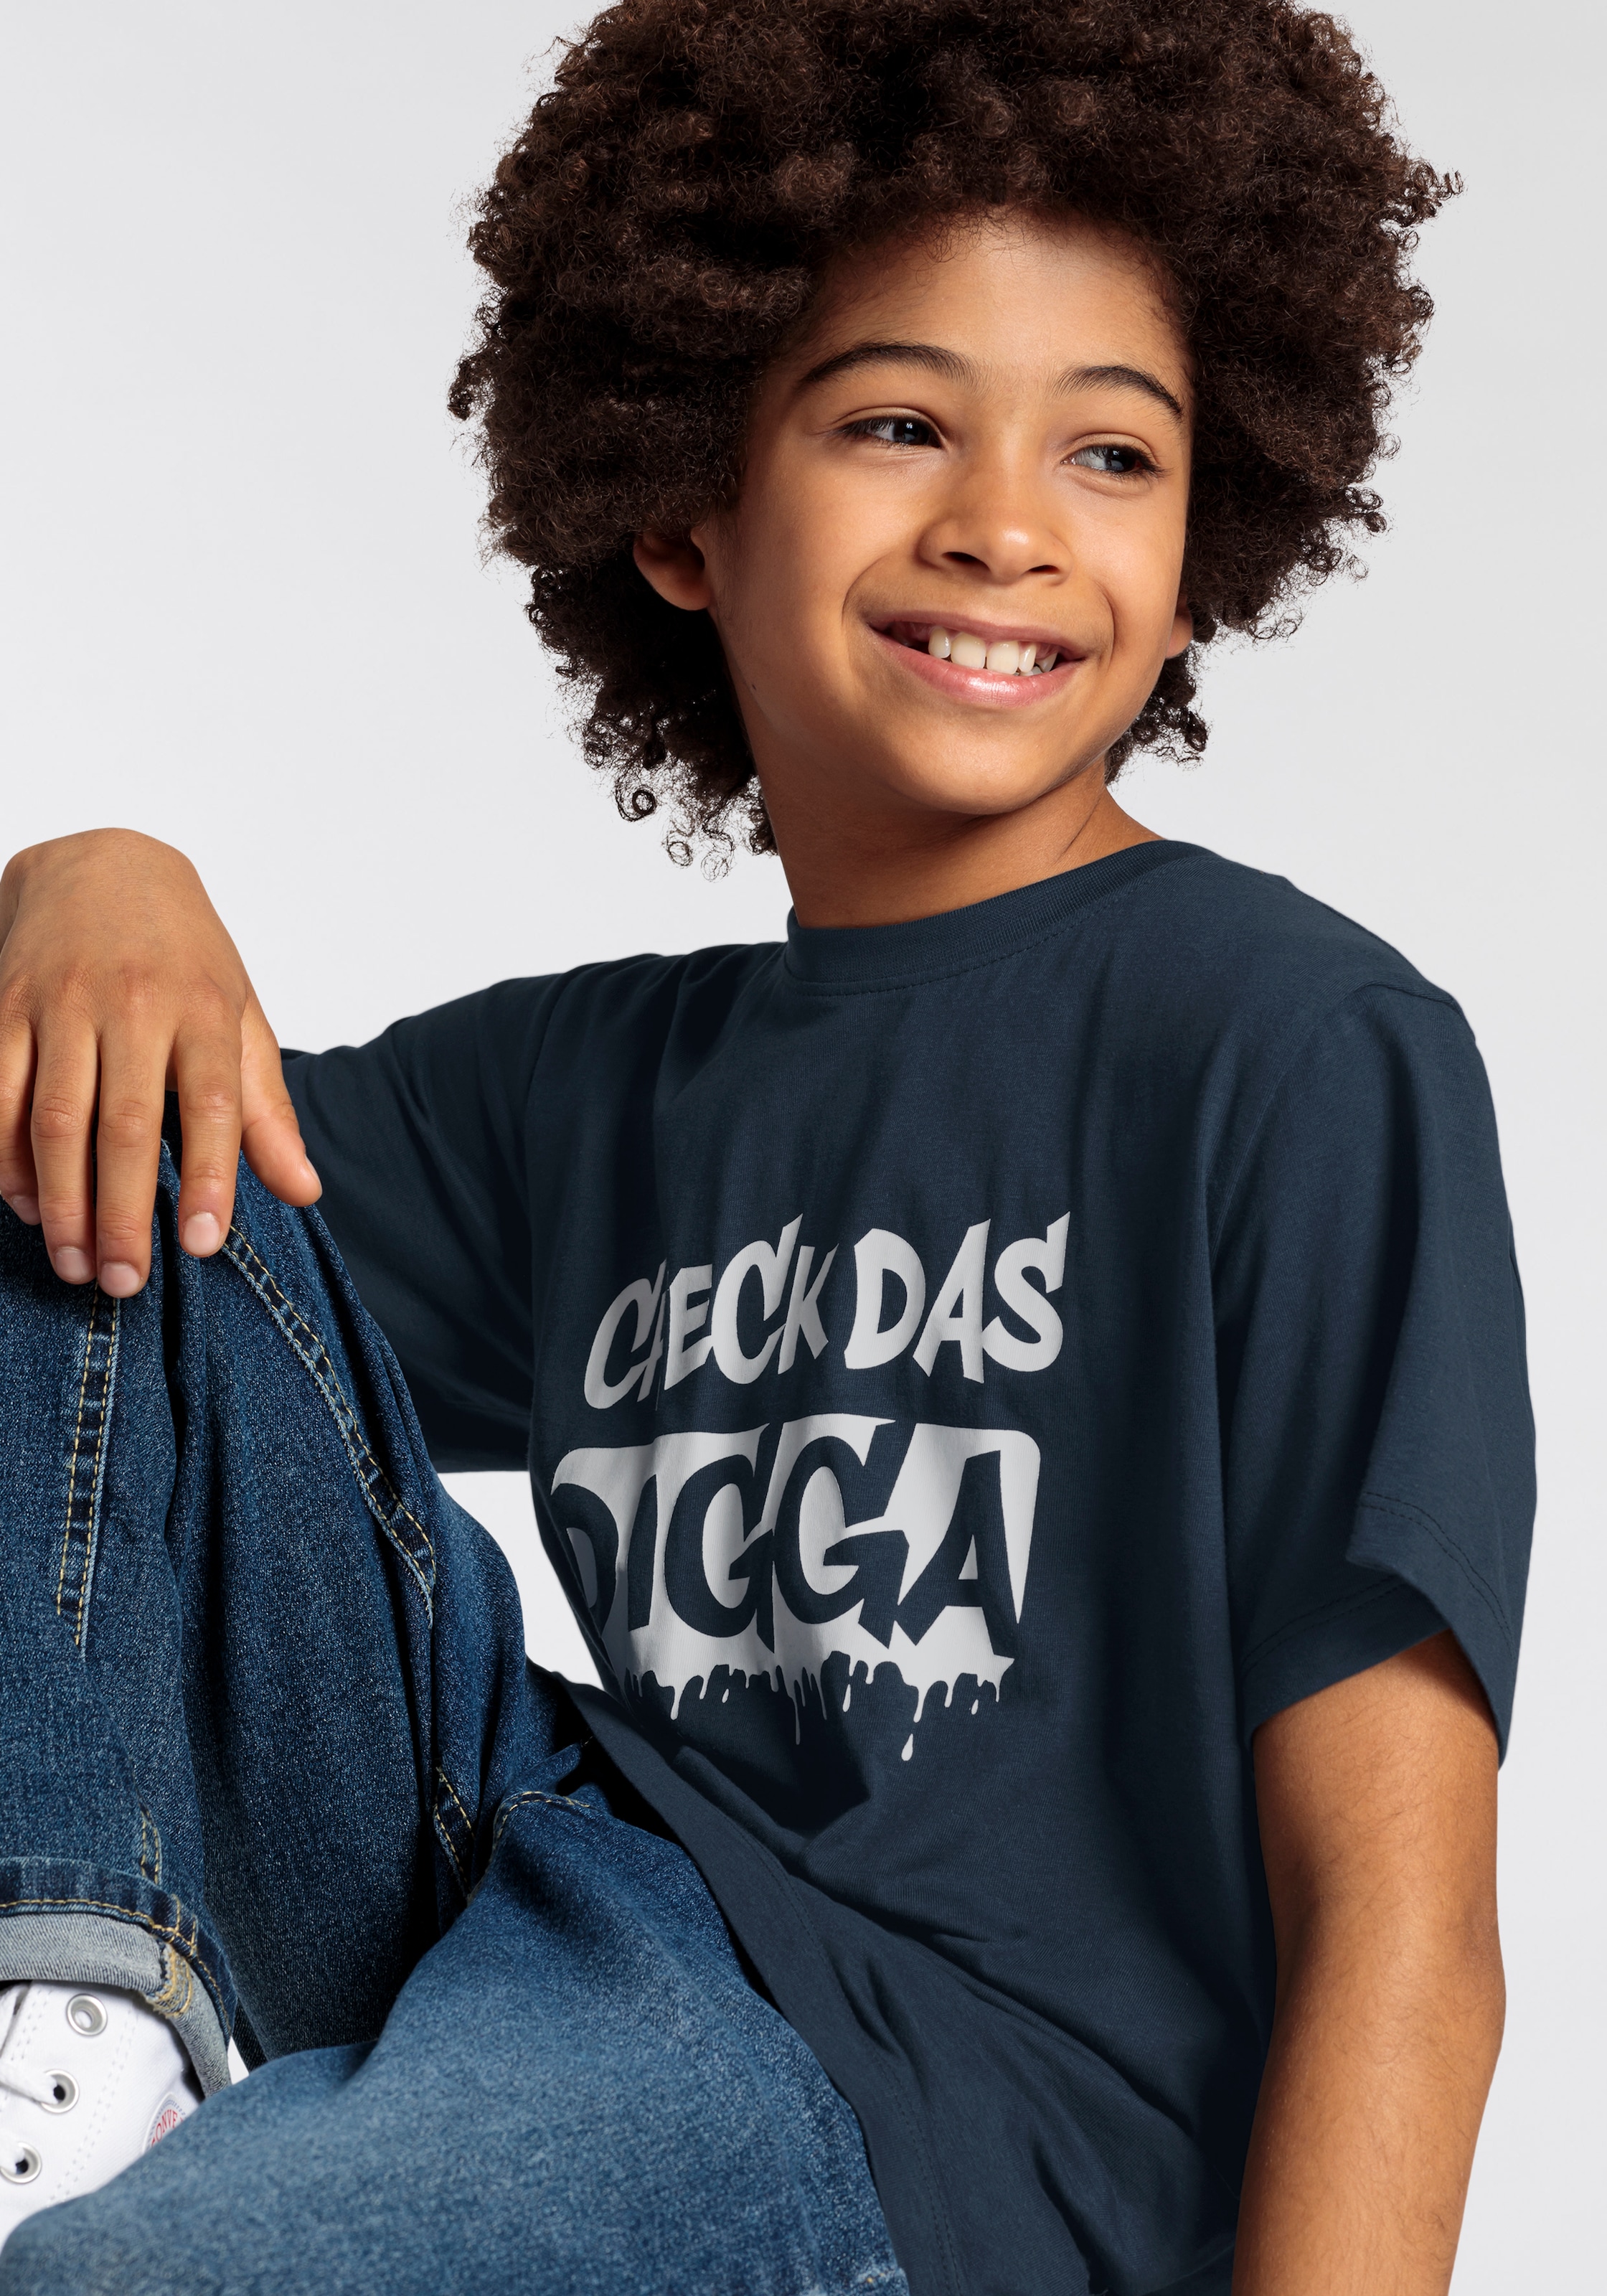 Trendige KIDSWORLD T-Shirt »CHECK DAS DIGGA«, Sprücheshirt für Jungen  versandkostenfrei kaufen